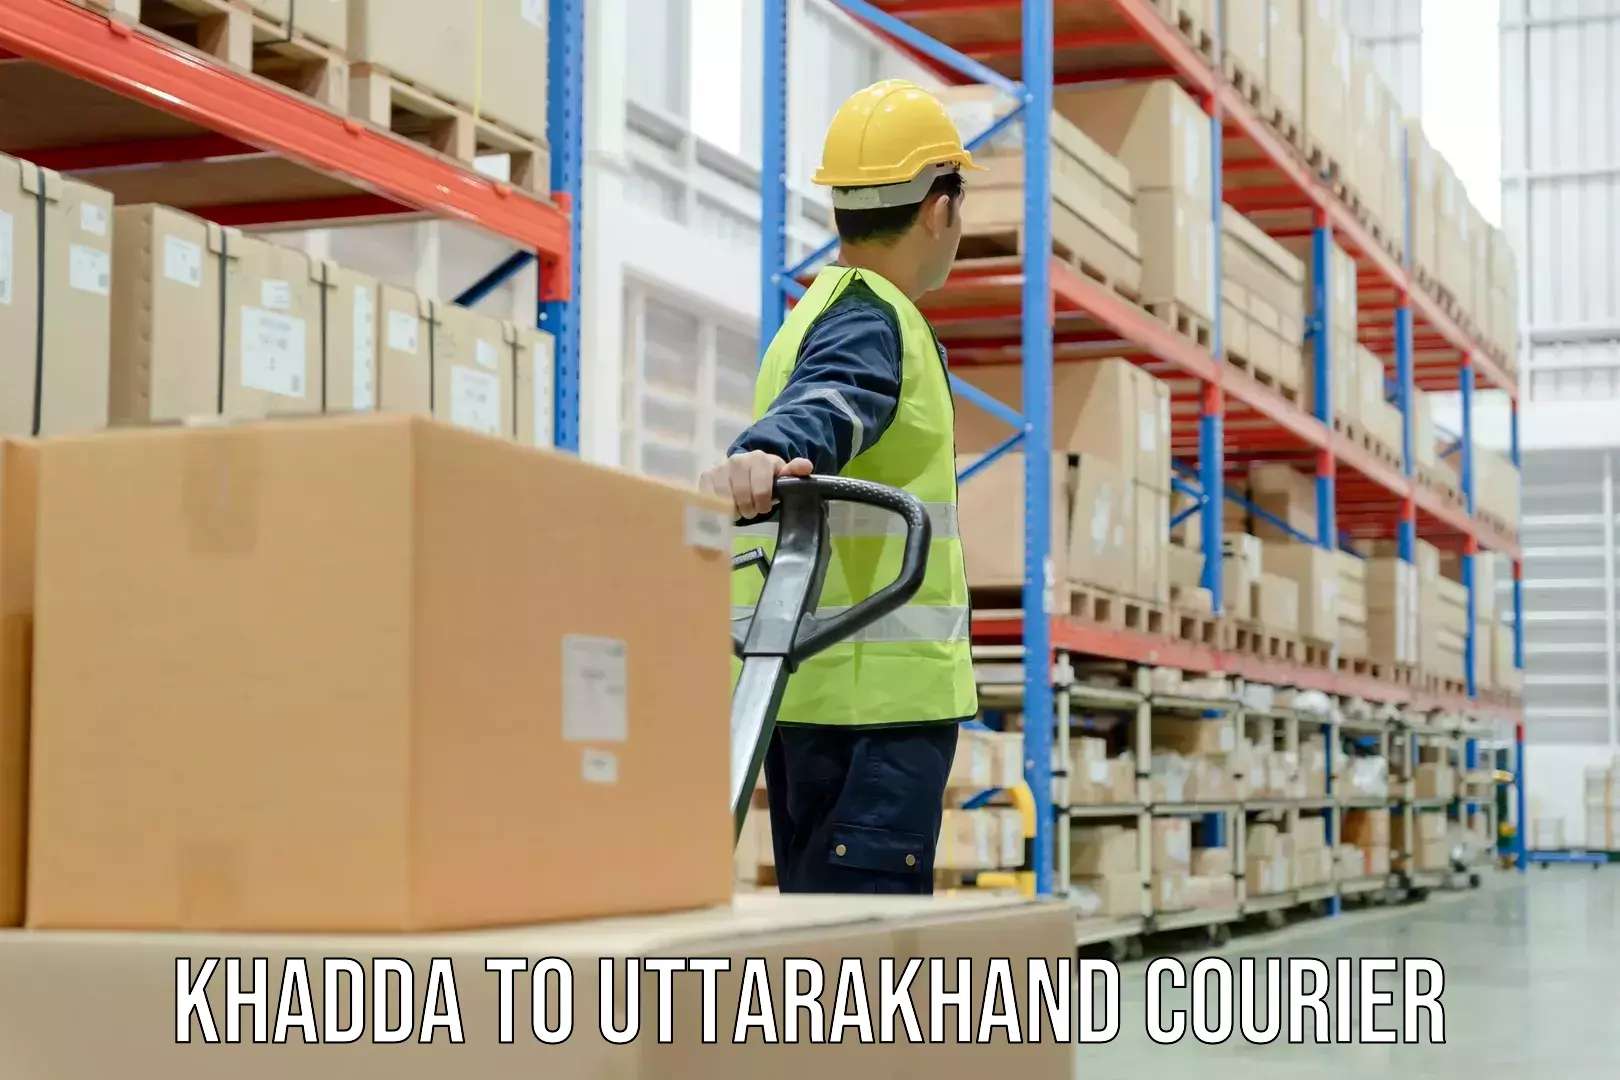 Advanced shipping technology Khadda to Haridwar